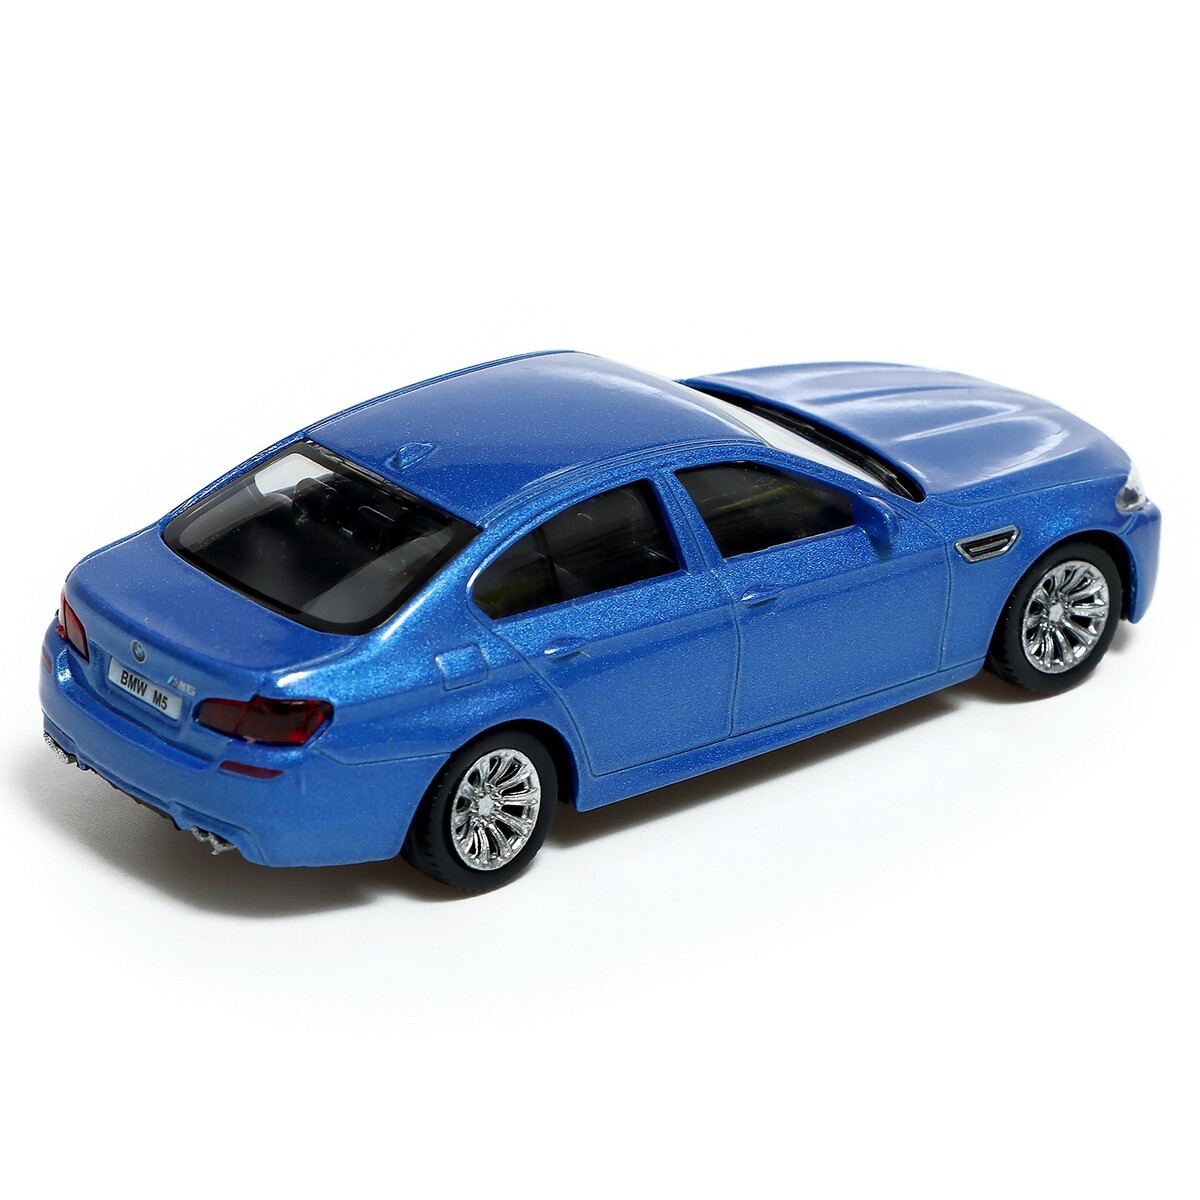 фото Машина металлическая bmw m5, 1:43, цвет синий автоград